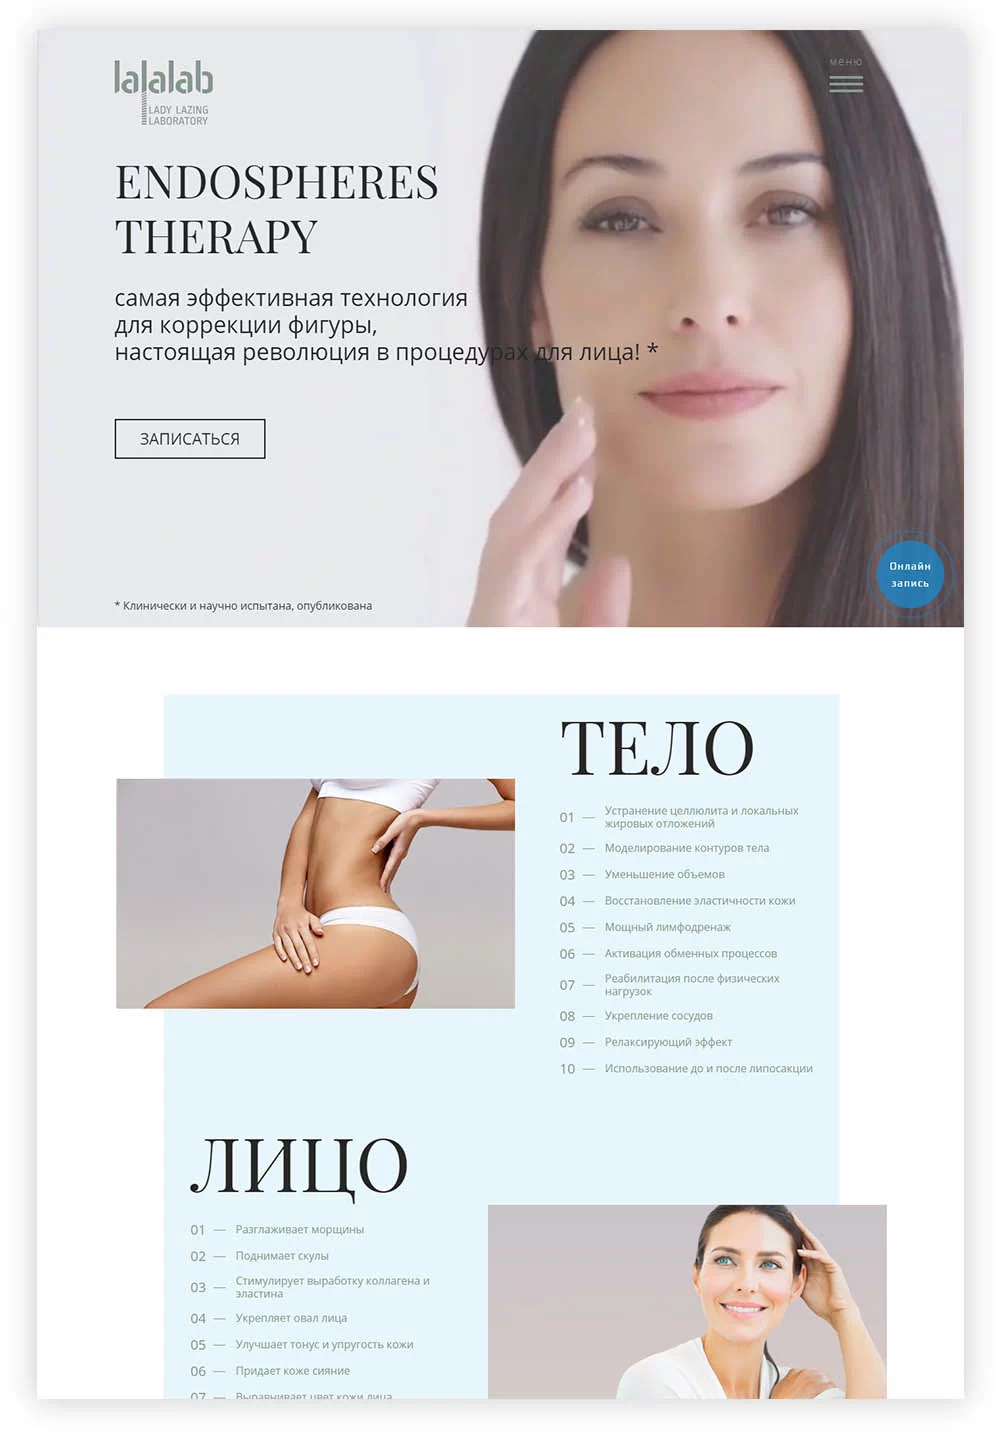 Дизайн сайта lalalab.ru был создан с учетом исследования целевой аудитории — девушки и женщины в возрасте от 25 до 45 лет. Чтобы пользователям было проще идентифицировать себя, как потенциального клиента, были подобраны изображения женщин того же возраста